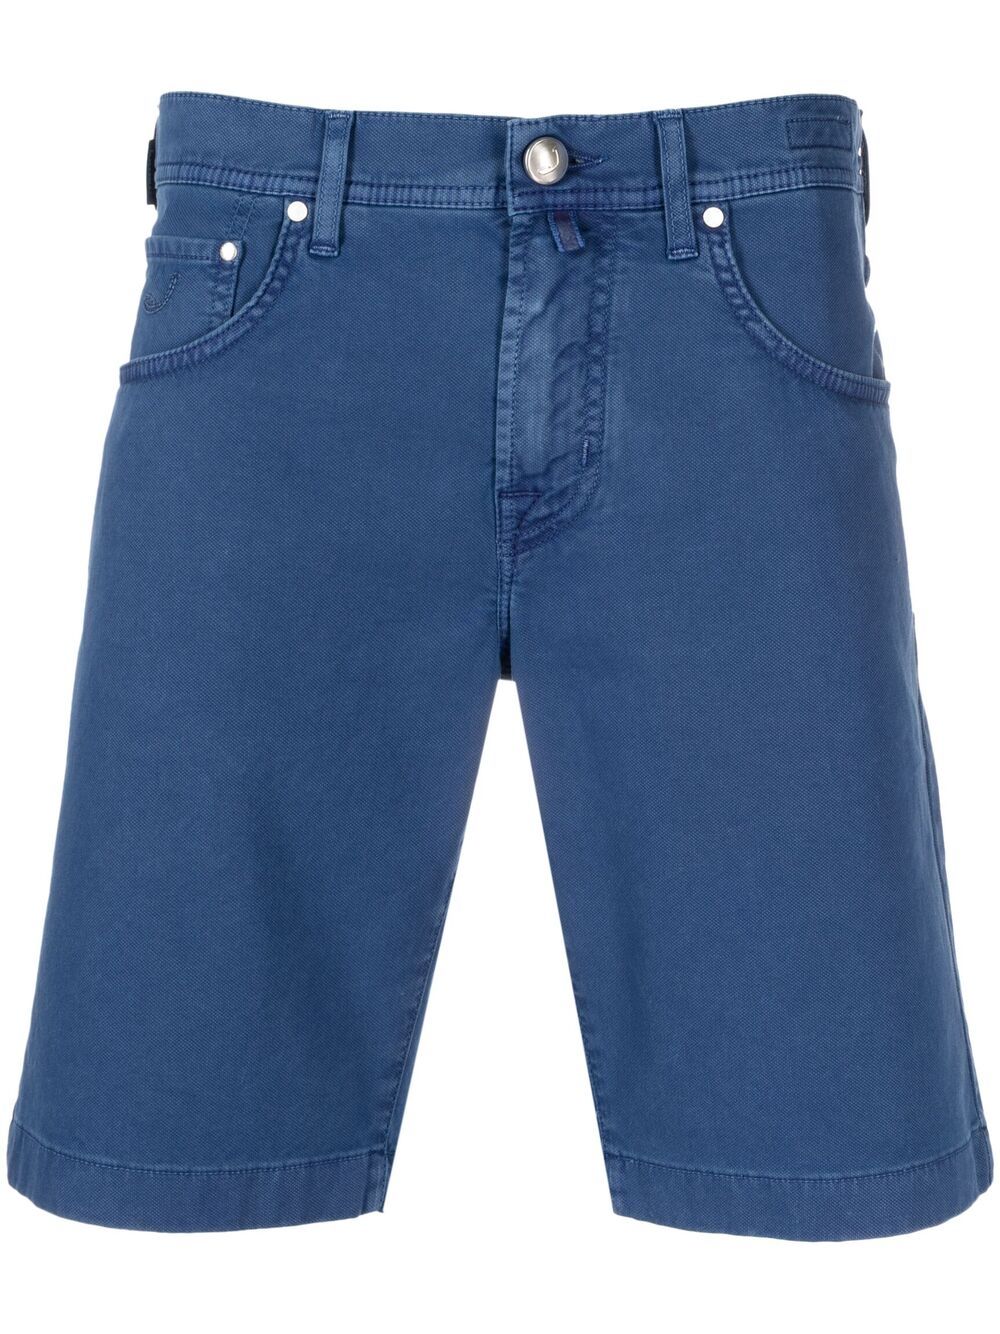 фото Jacob cohen джинсовые шорты кроя слим